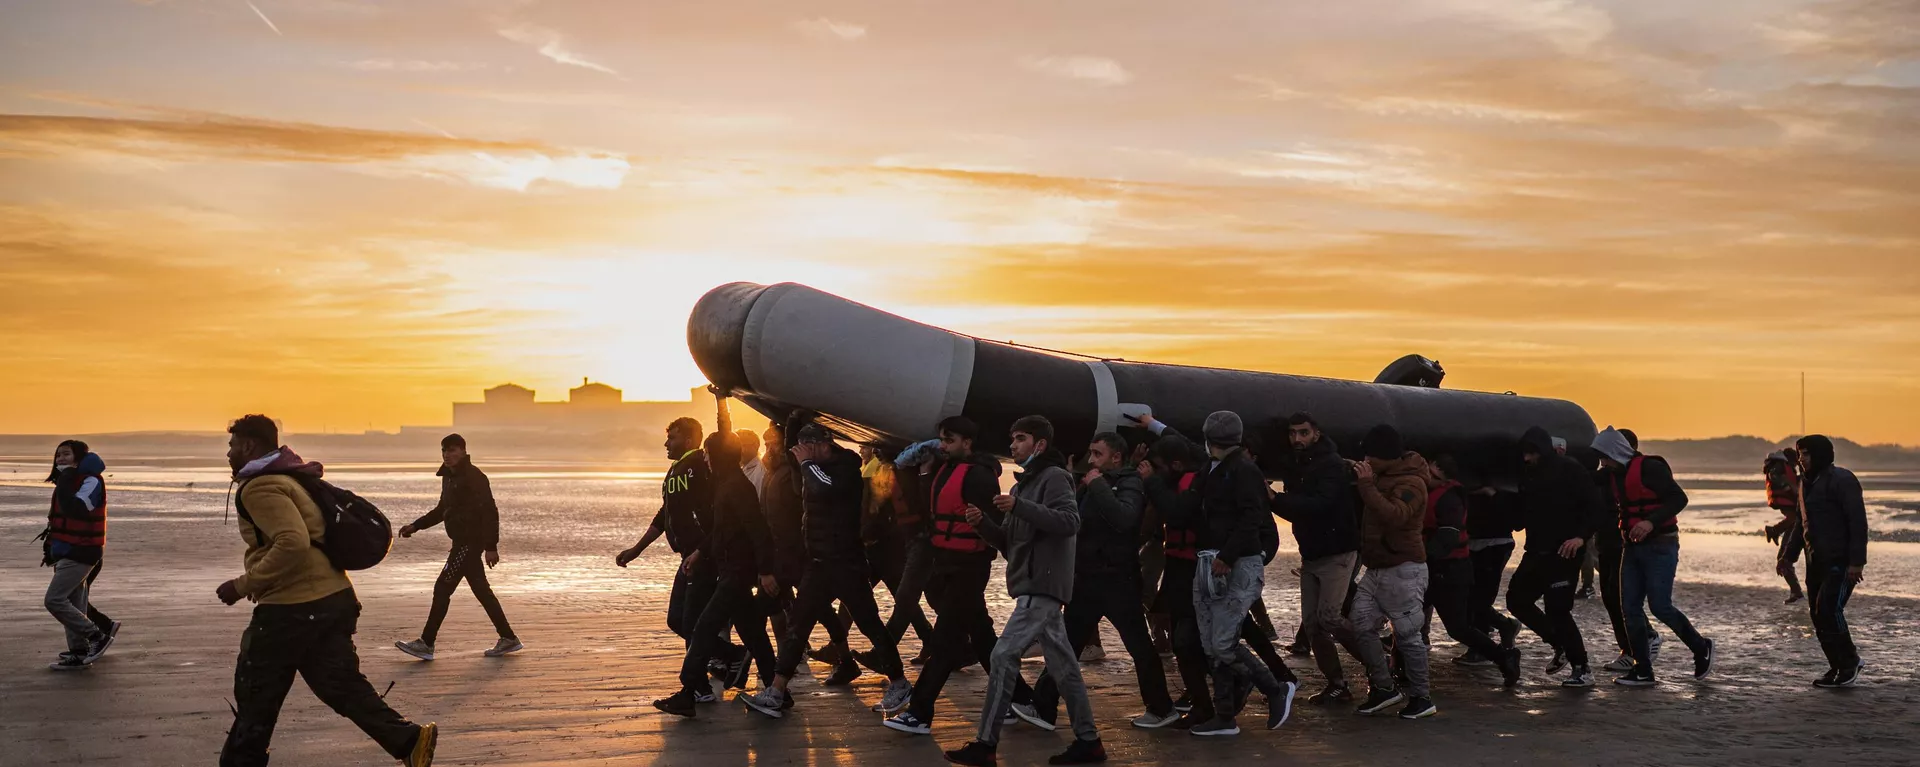 Migrantes llevan a hombros una embarcación de contrabando mientras se preparan para embarcar en la playa de Gravelines, cerca de Dunkerque, en el norte de Francia, el 12 de octubre de 2022, en un intento de cruzar el canal de la Mancha.  - Sputnik Mundo, 1920, 18.12.2022